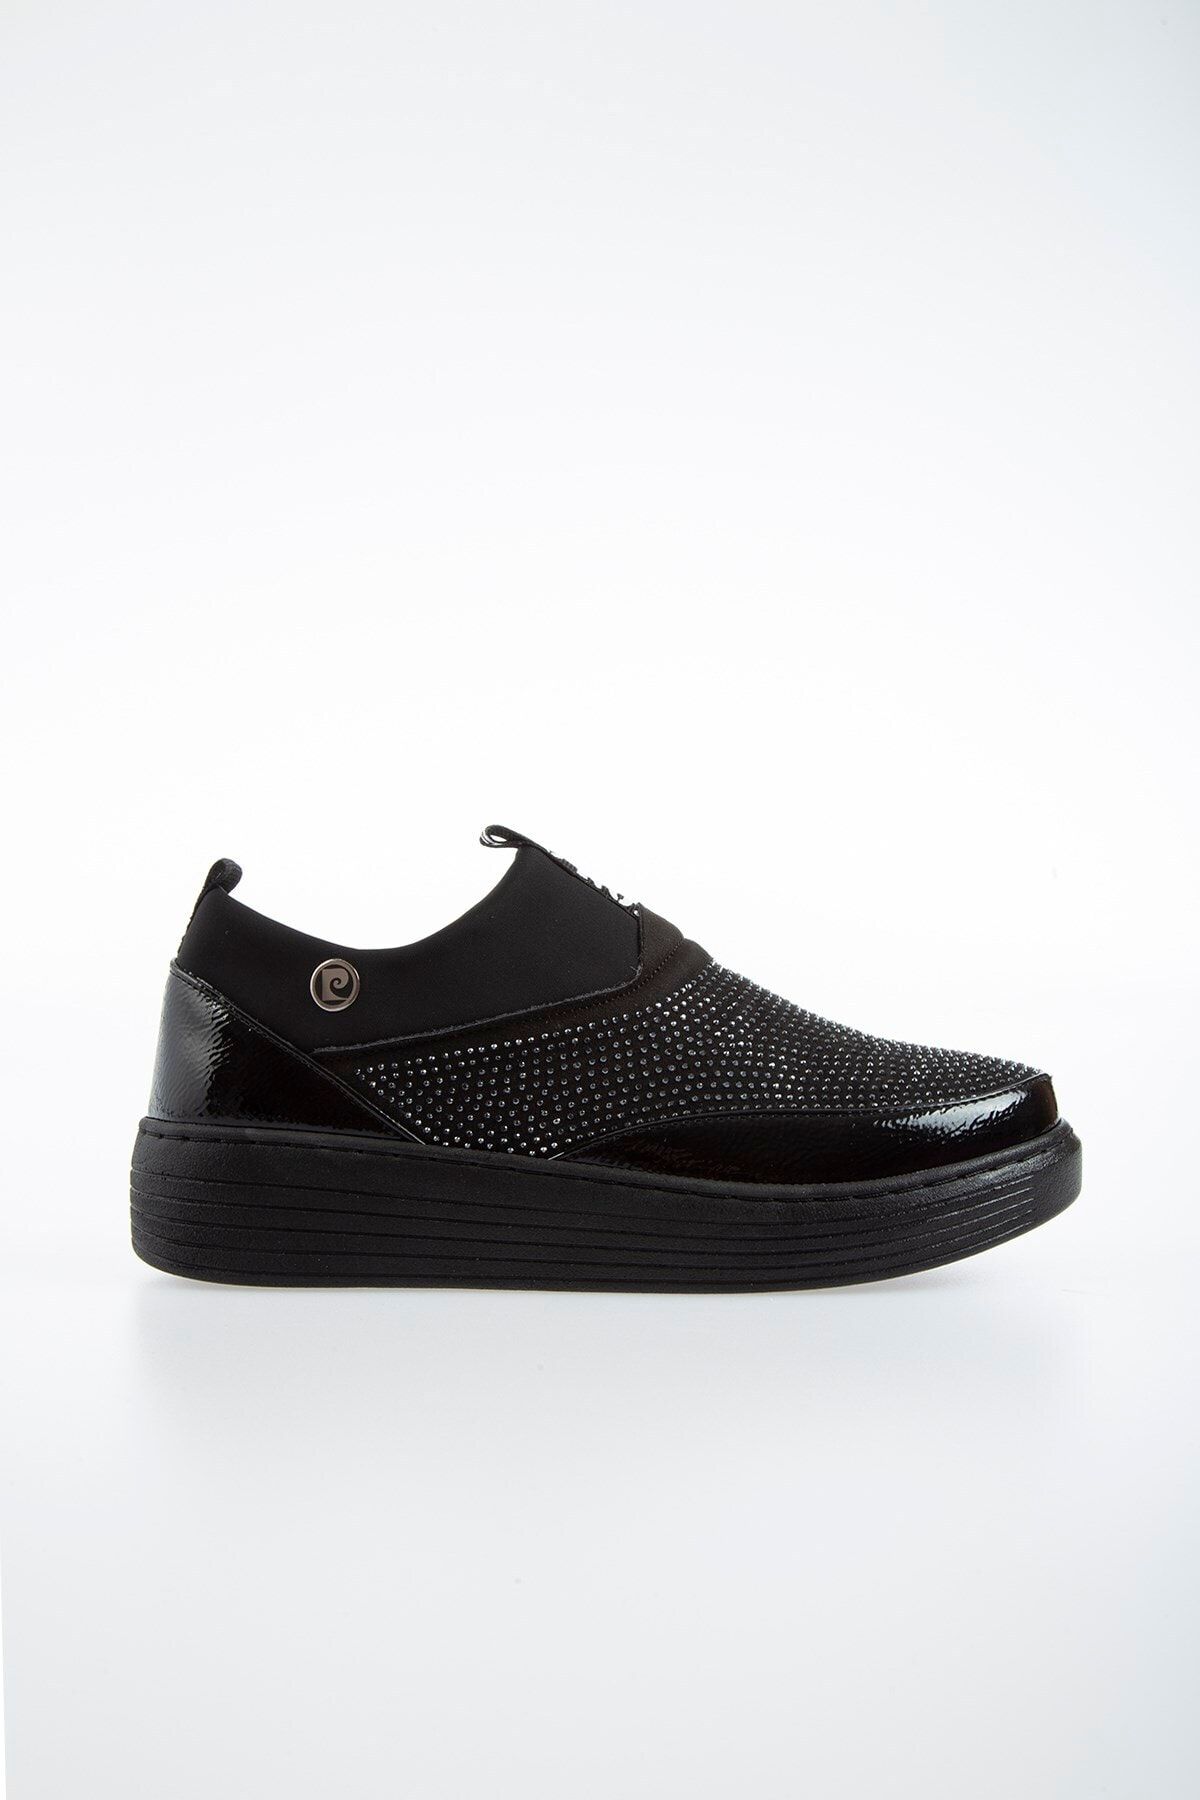 Pierre Cardin Pc-50806 Parlak Siyah Kadın Ayakkabı